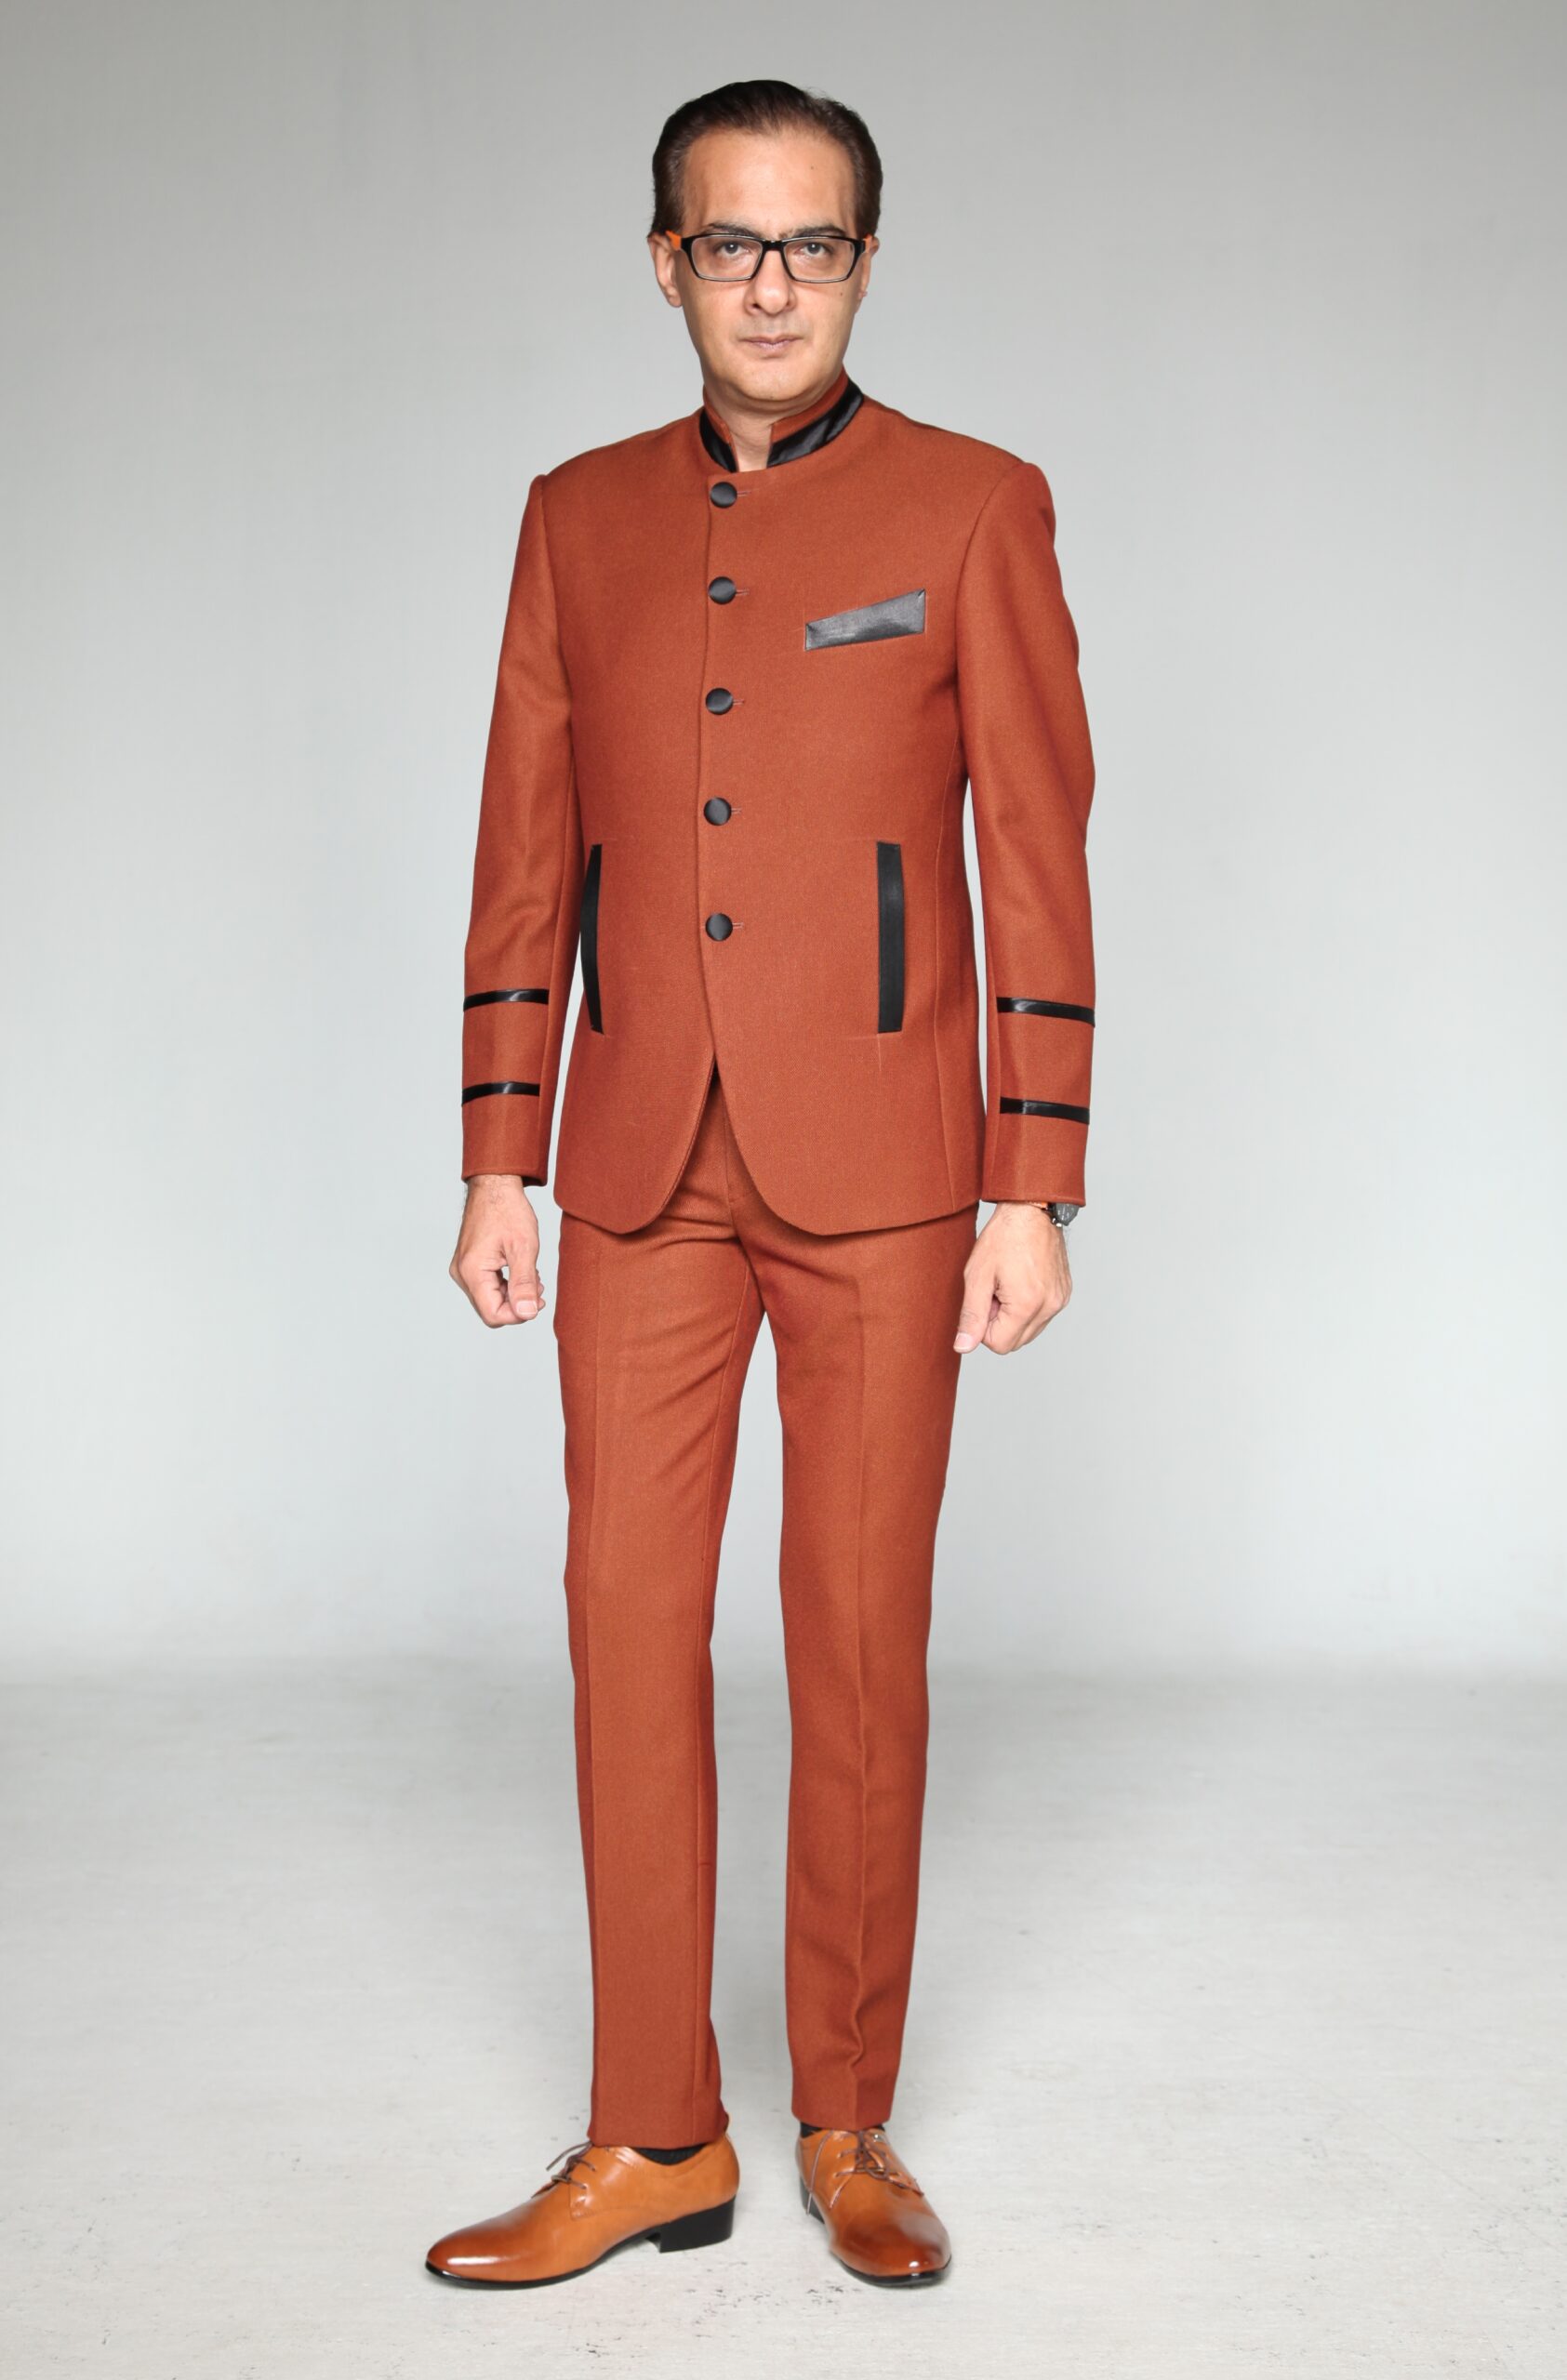 Mst 5036 03 Rent Rental Hire Tuxedo Suit Black Tie Suit Designer Suits Shop Tailor Tailors Singapore Wedding